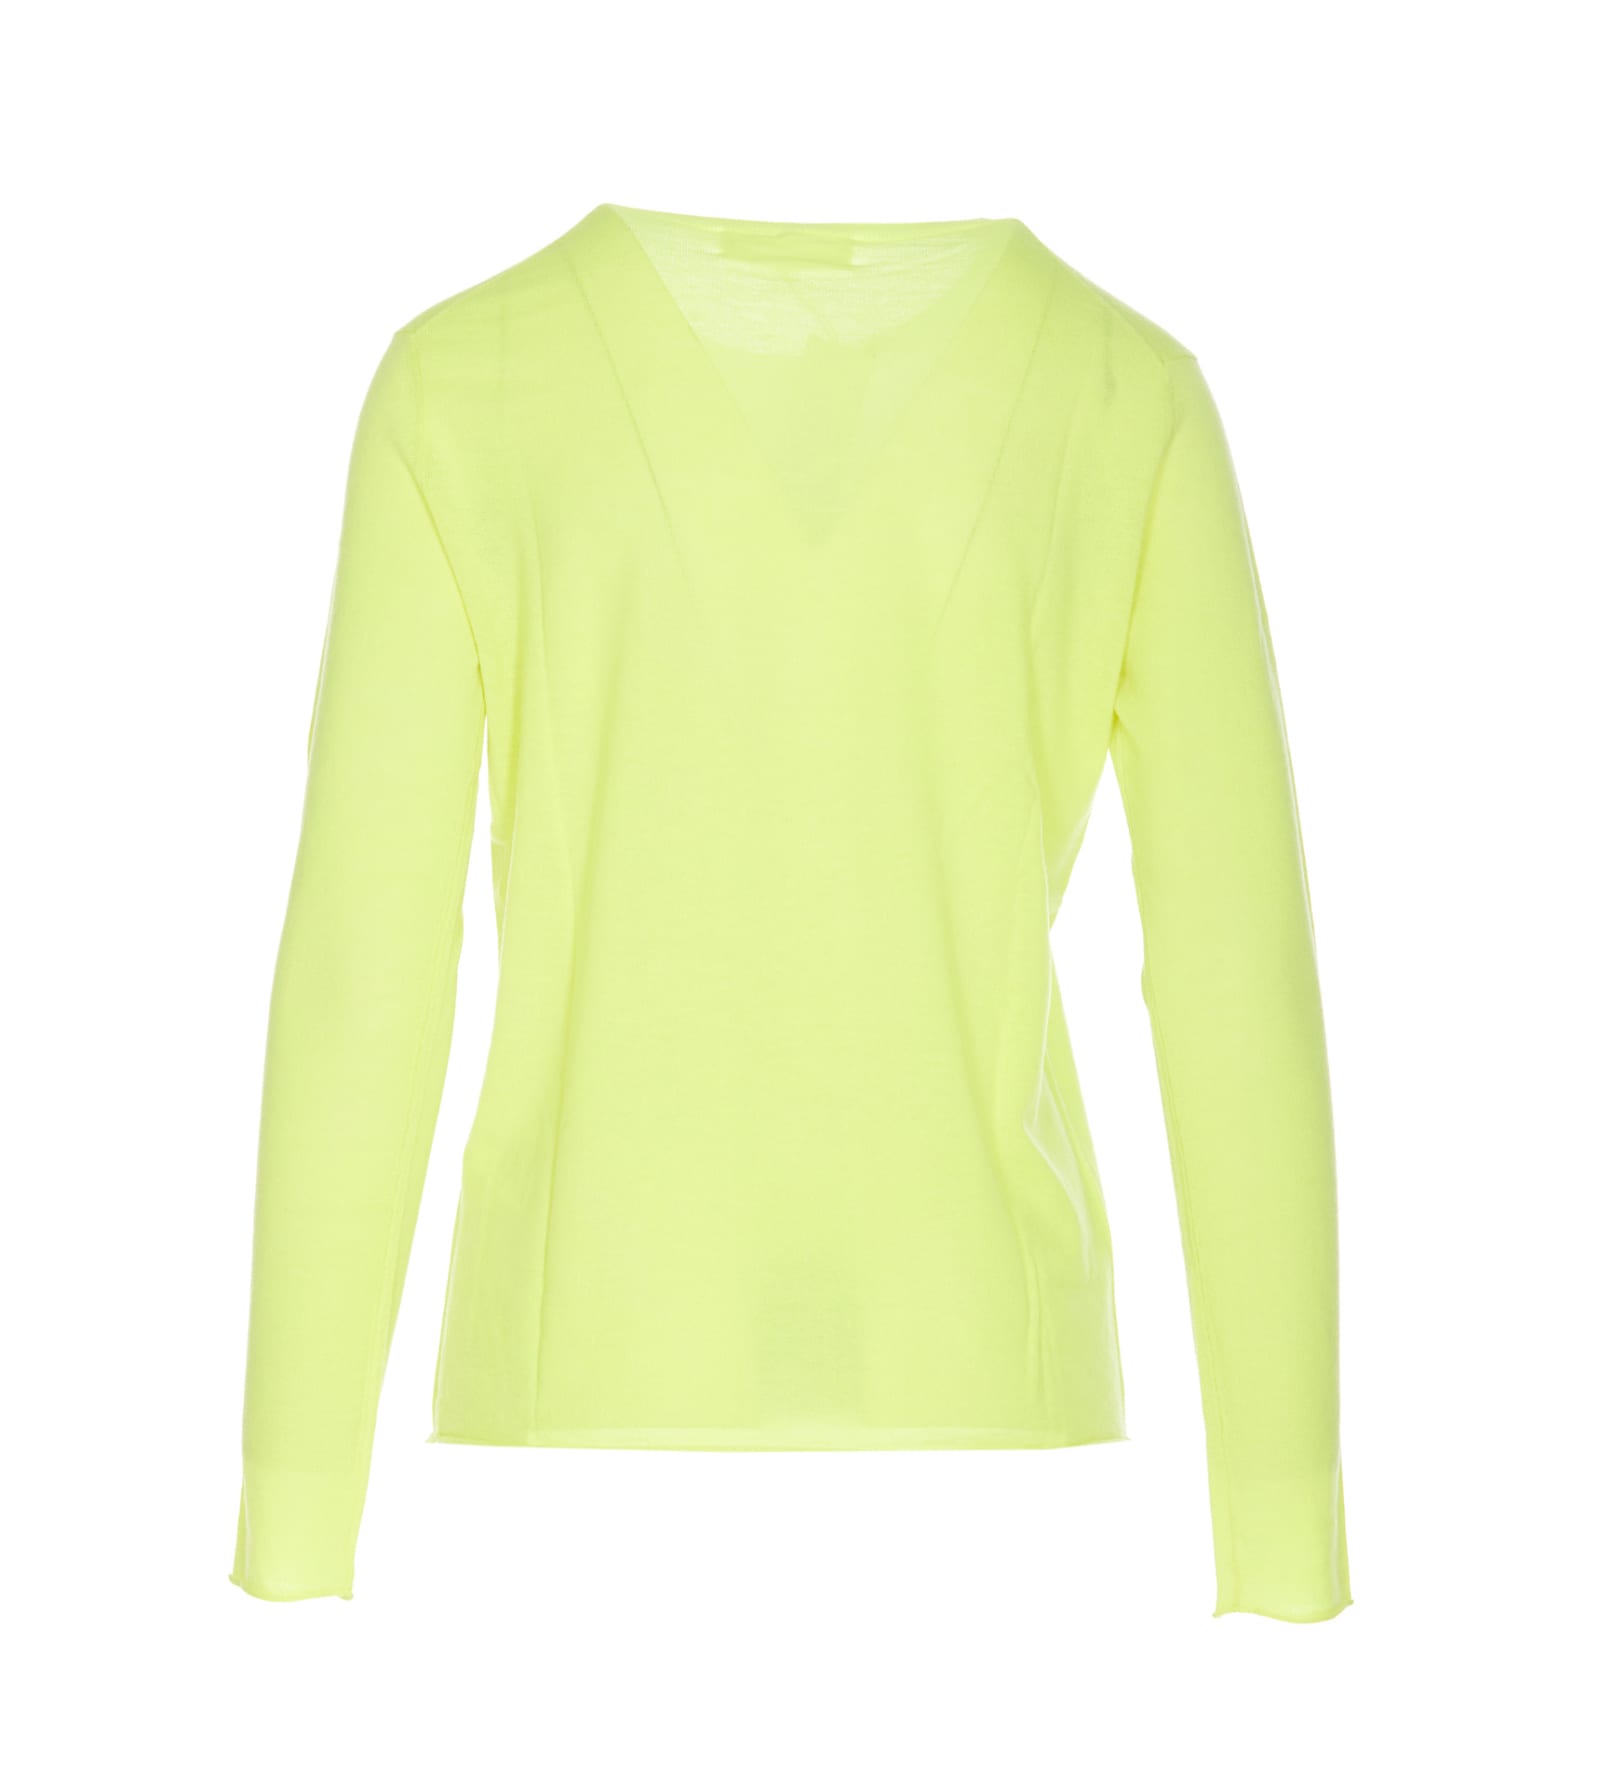 Shop Lisa Yang Alba Sweater In Yellow